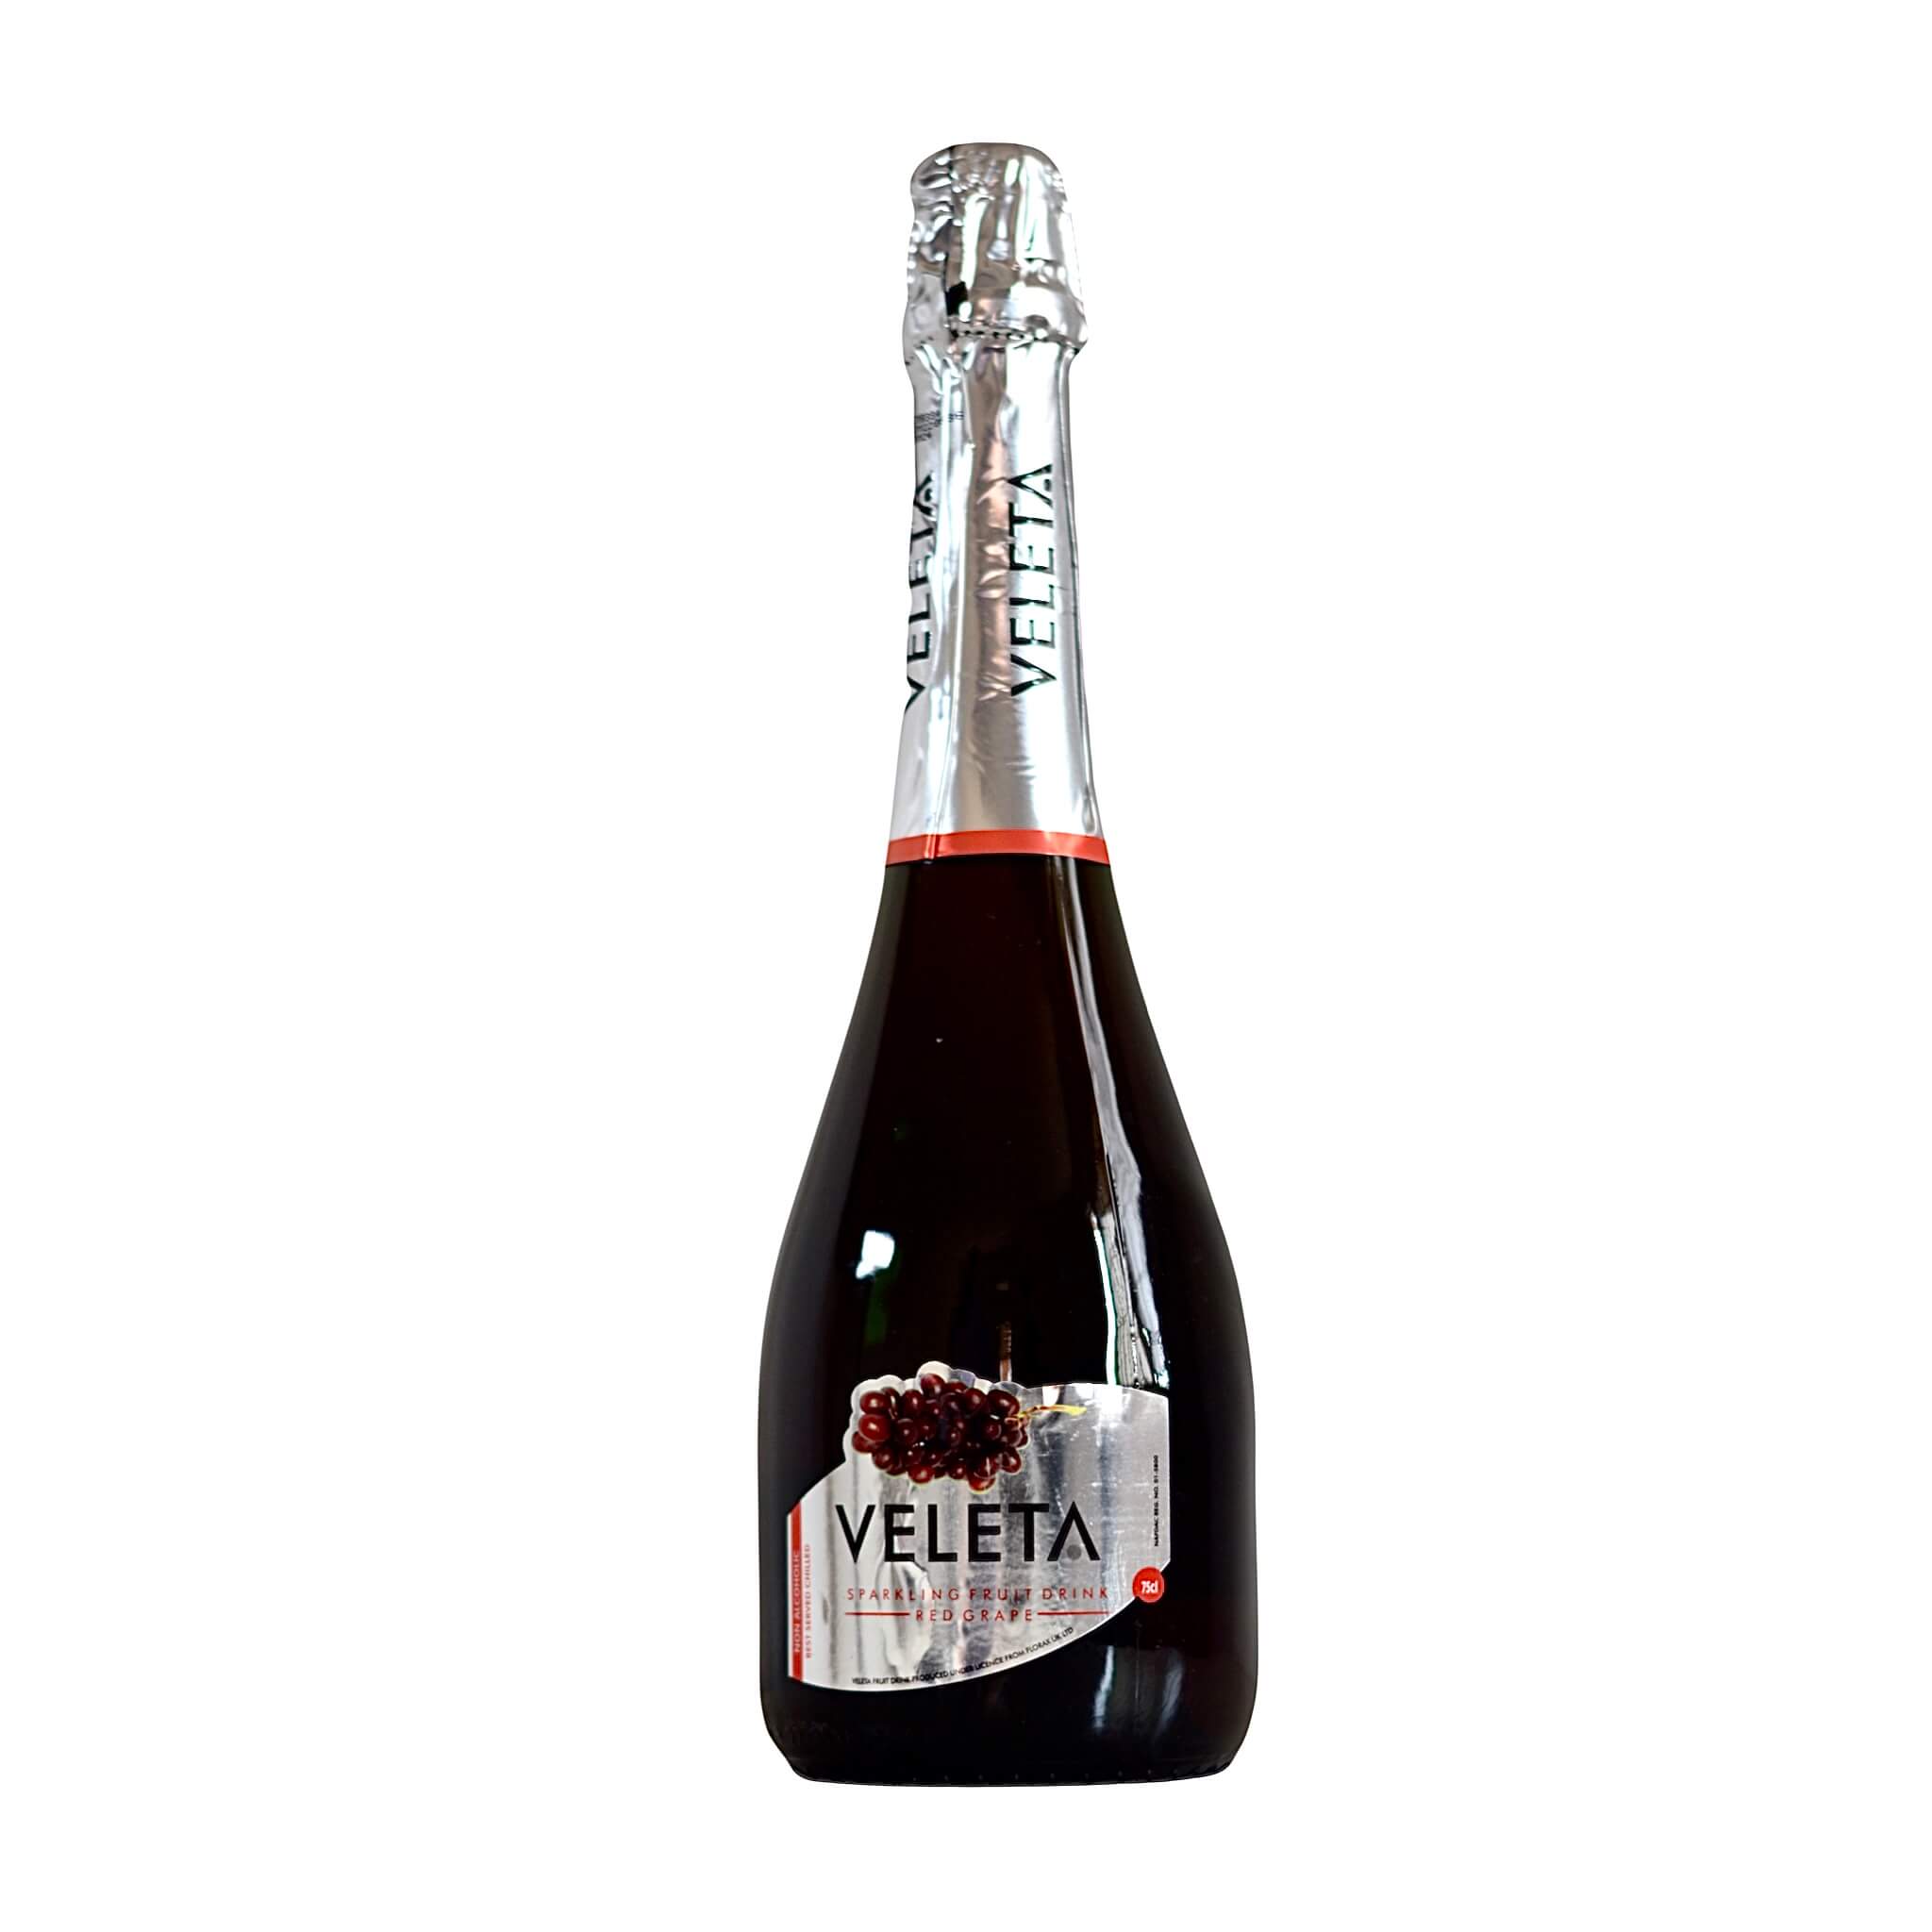 A 75cl bottle of Veleta Wine